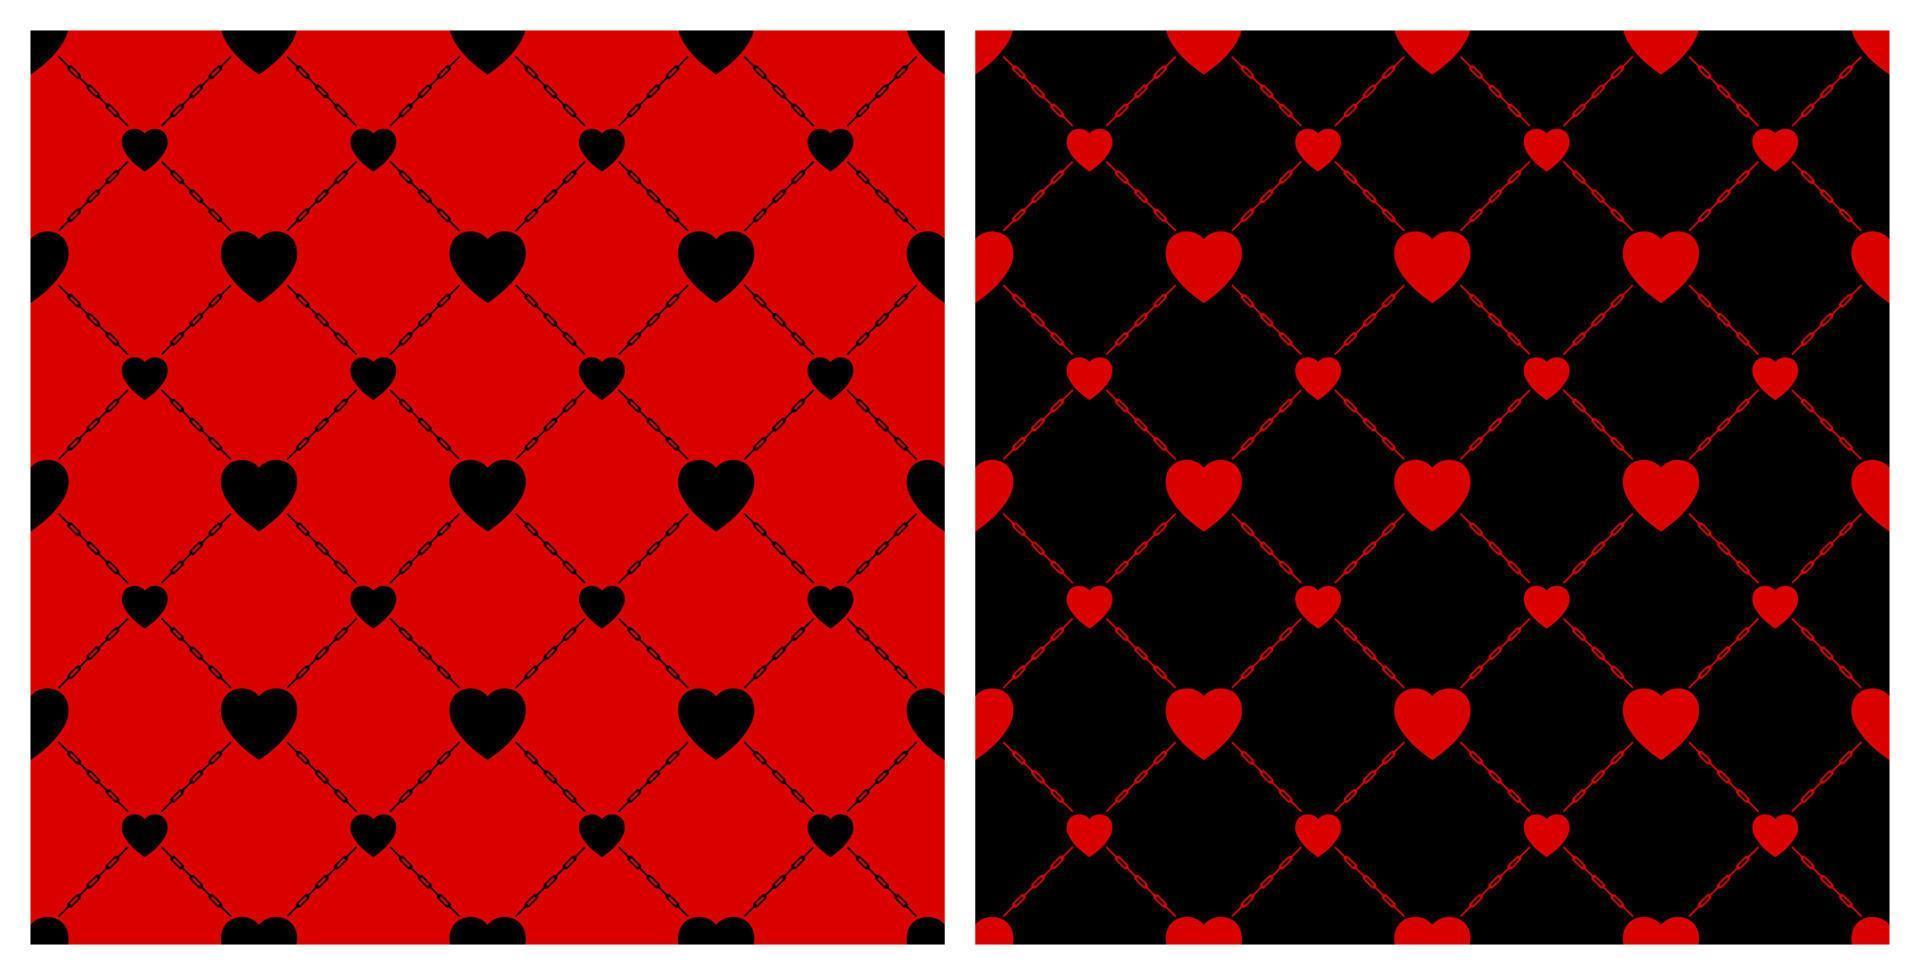 naadloos achtergrond patroon. zwart rood hart keten maas schutting. structuur ontwerp voor kleding stof, tegel, banier, sjabloon, kaart, poster, achtergrond, muur. vector illustratie.